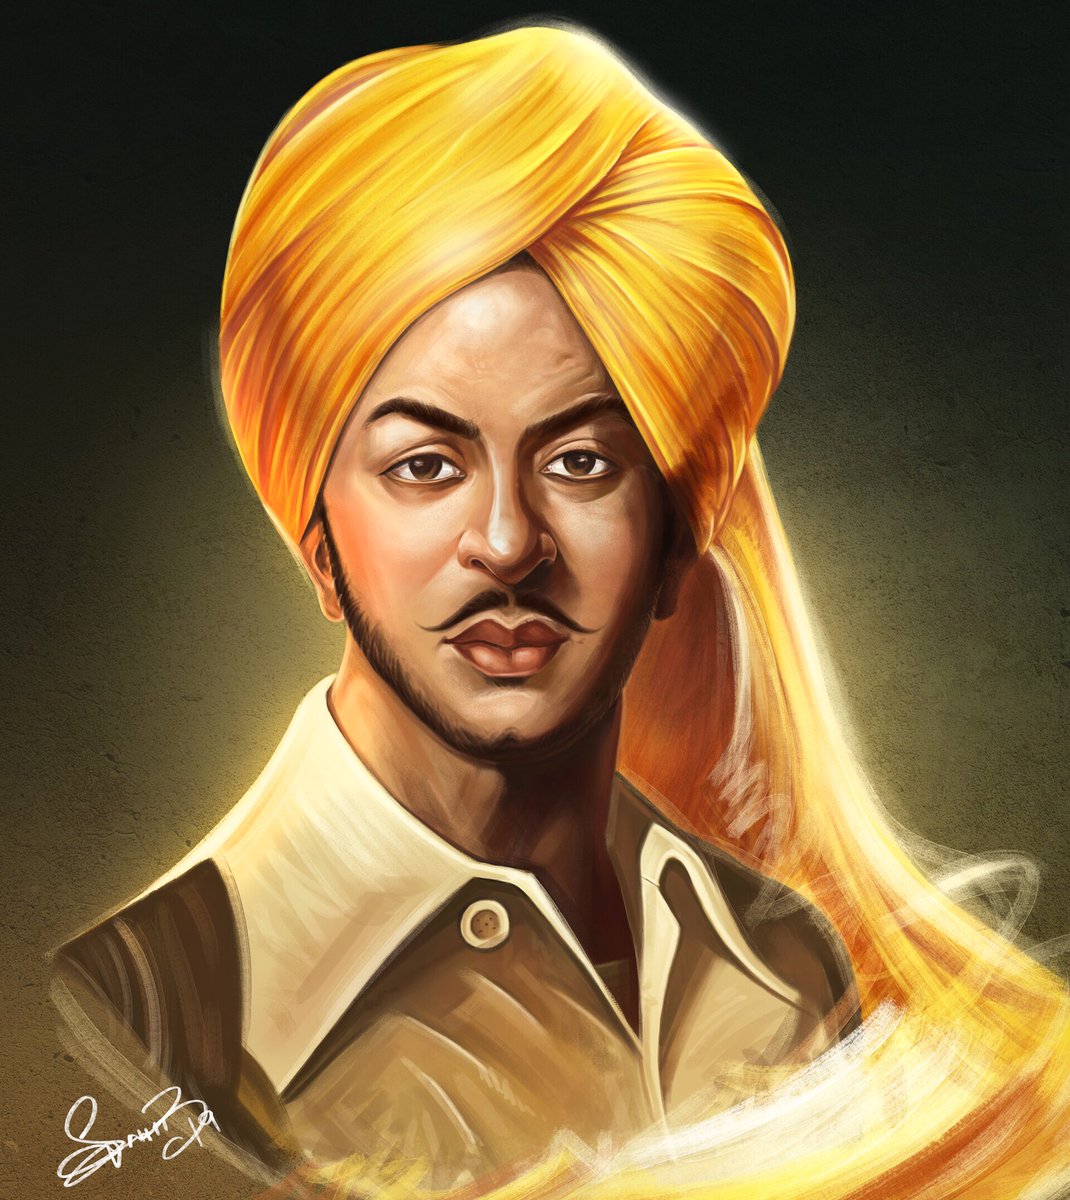 the legends• Bhagat Puran Singh• Amrita Pritam• Bhagat Singh